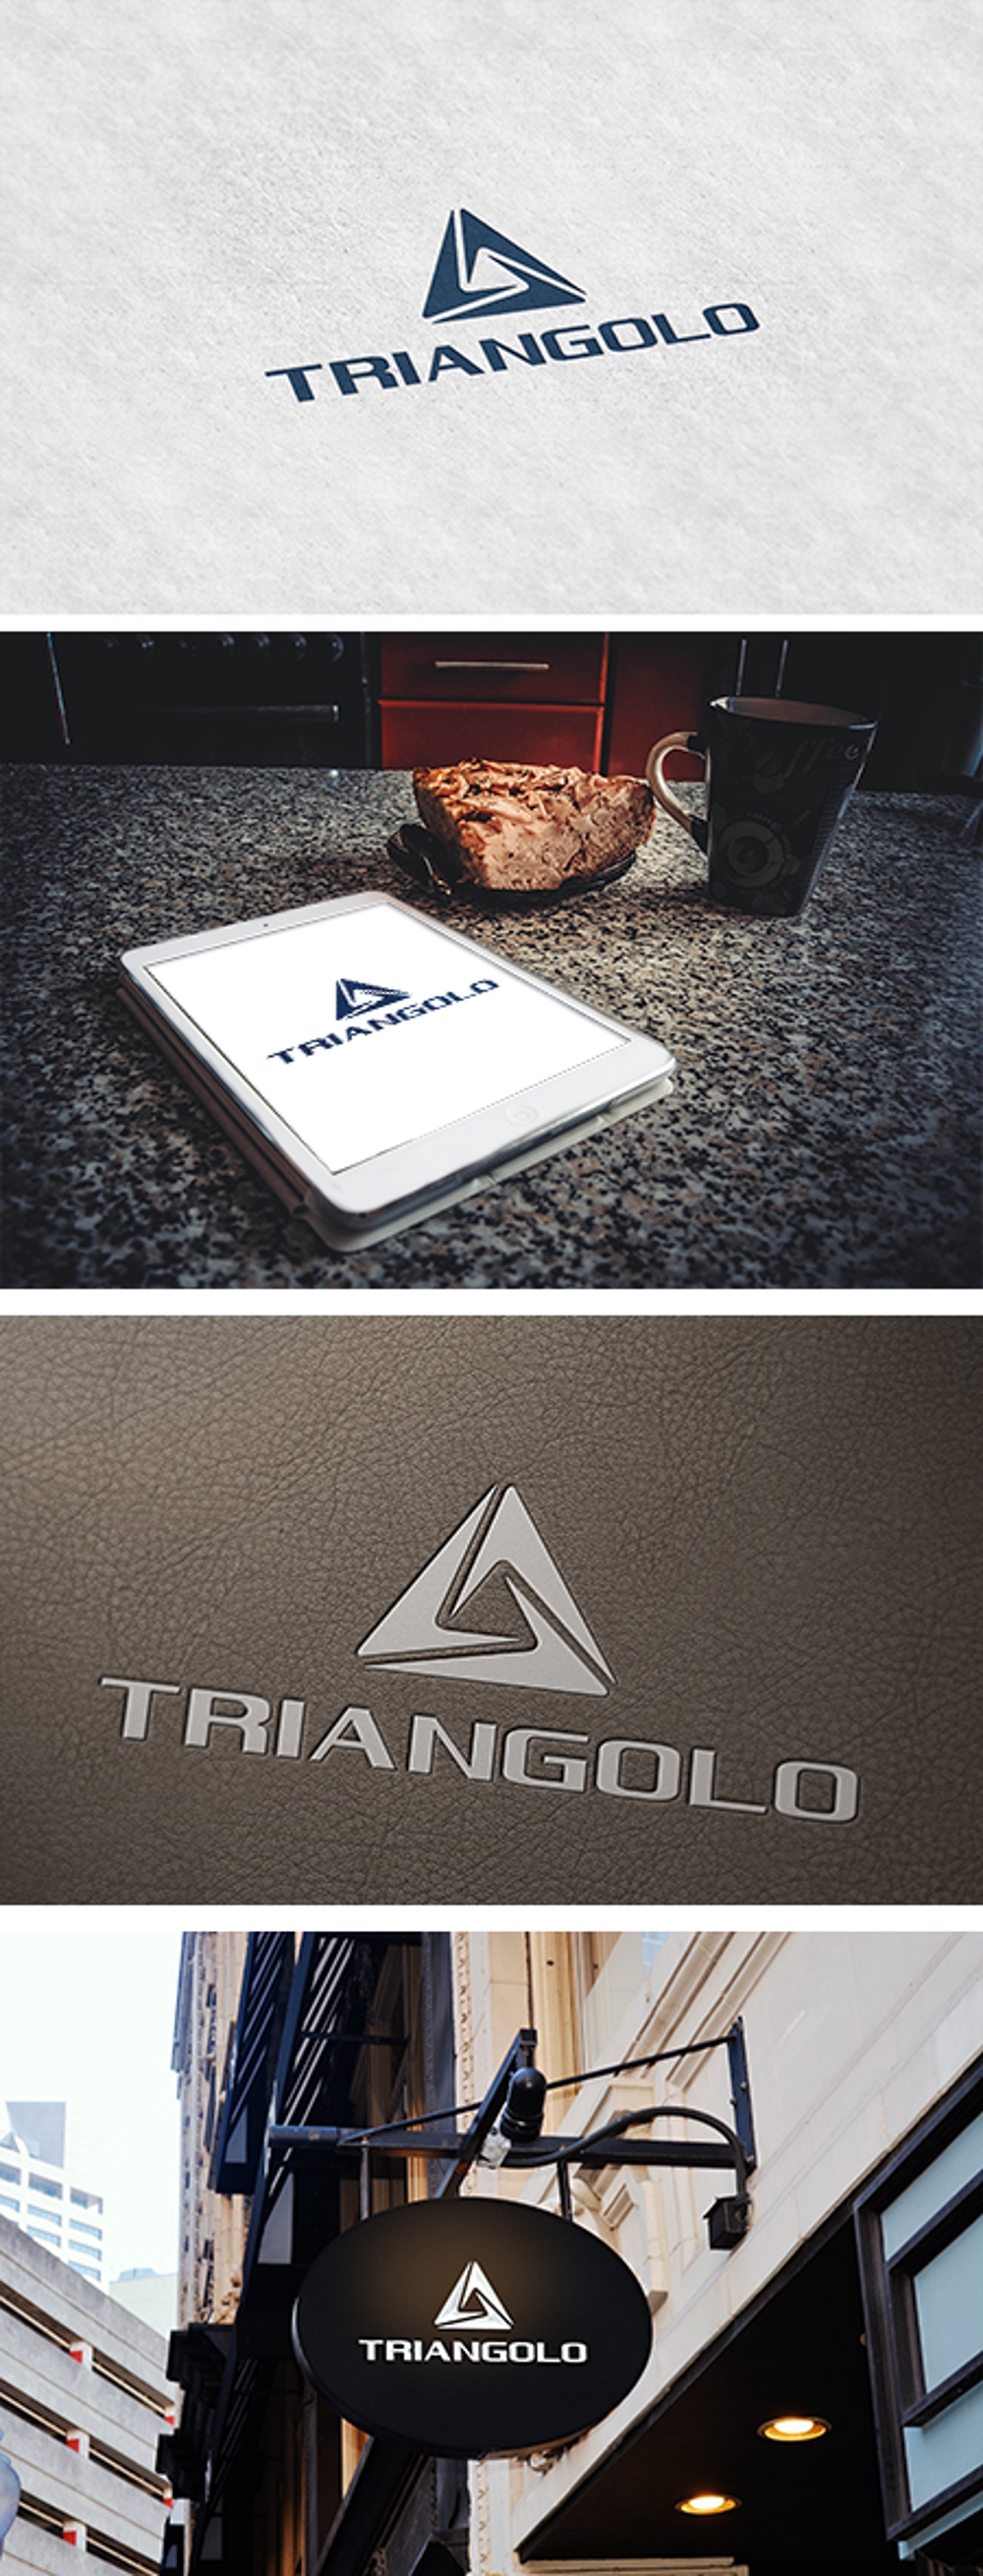 ファッションブランド「TRIANGOLO」のロゴ